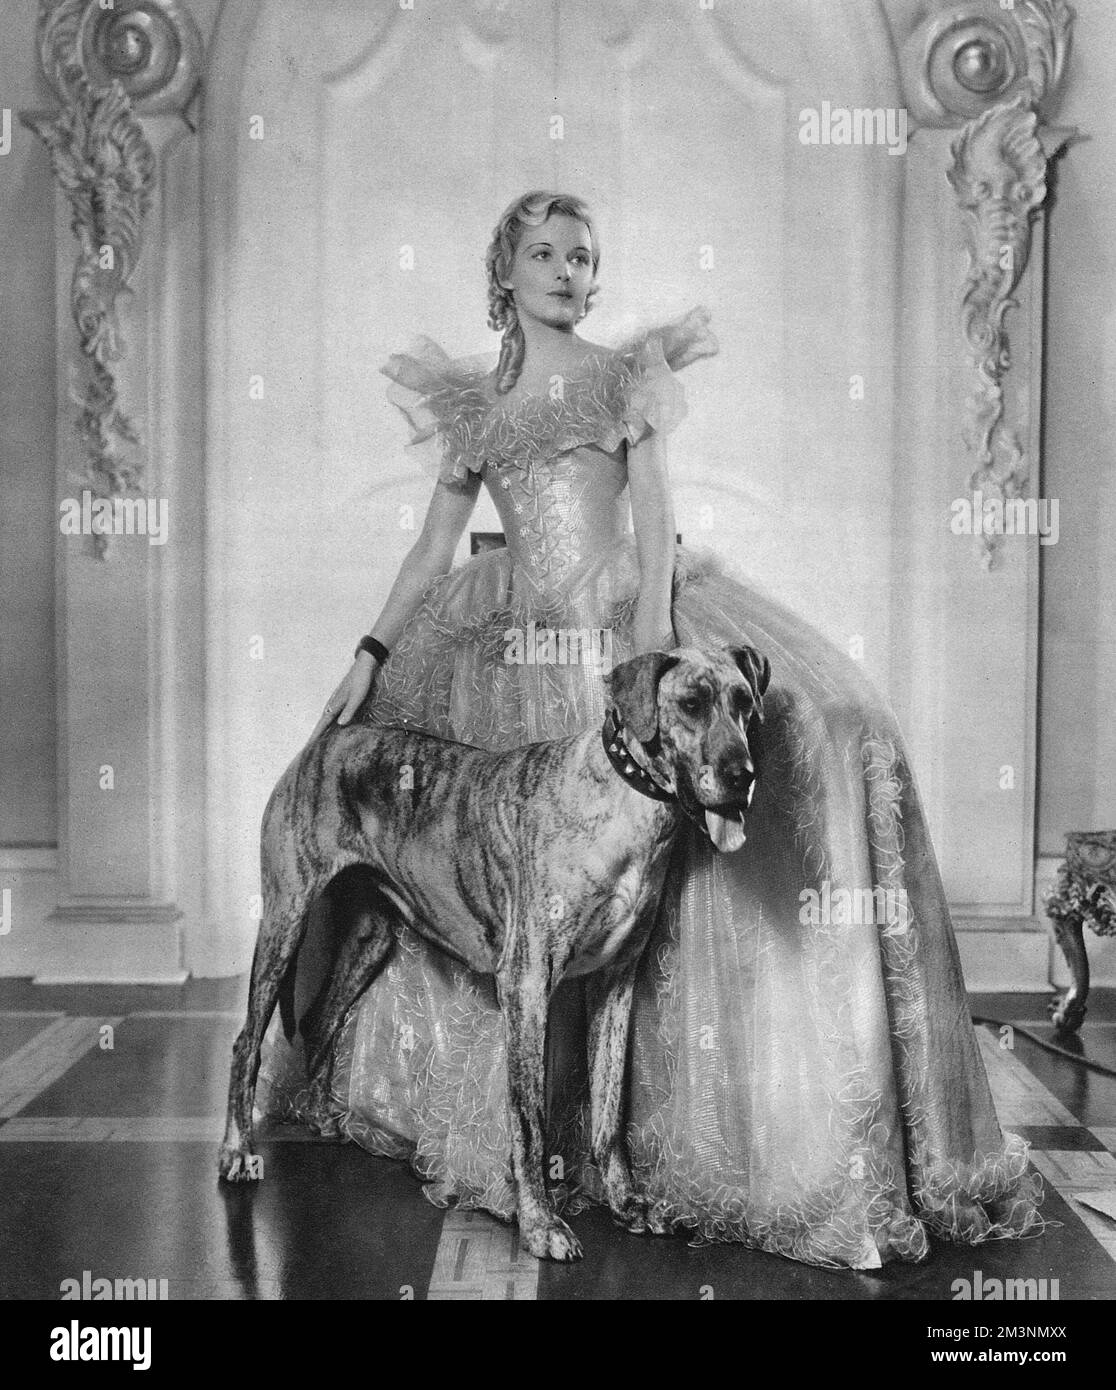 Edith Madeleine Carroll (1906 - 1987), actriz británica y estrella de los treinta y nueve pasos, representada en el papel principal de la reina Caroline Matilda, hermana malograda del rey Jorge III en la película de Toeplitz, 'El dictador'. Fecha: 1934 Foto de stock